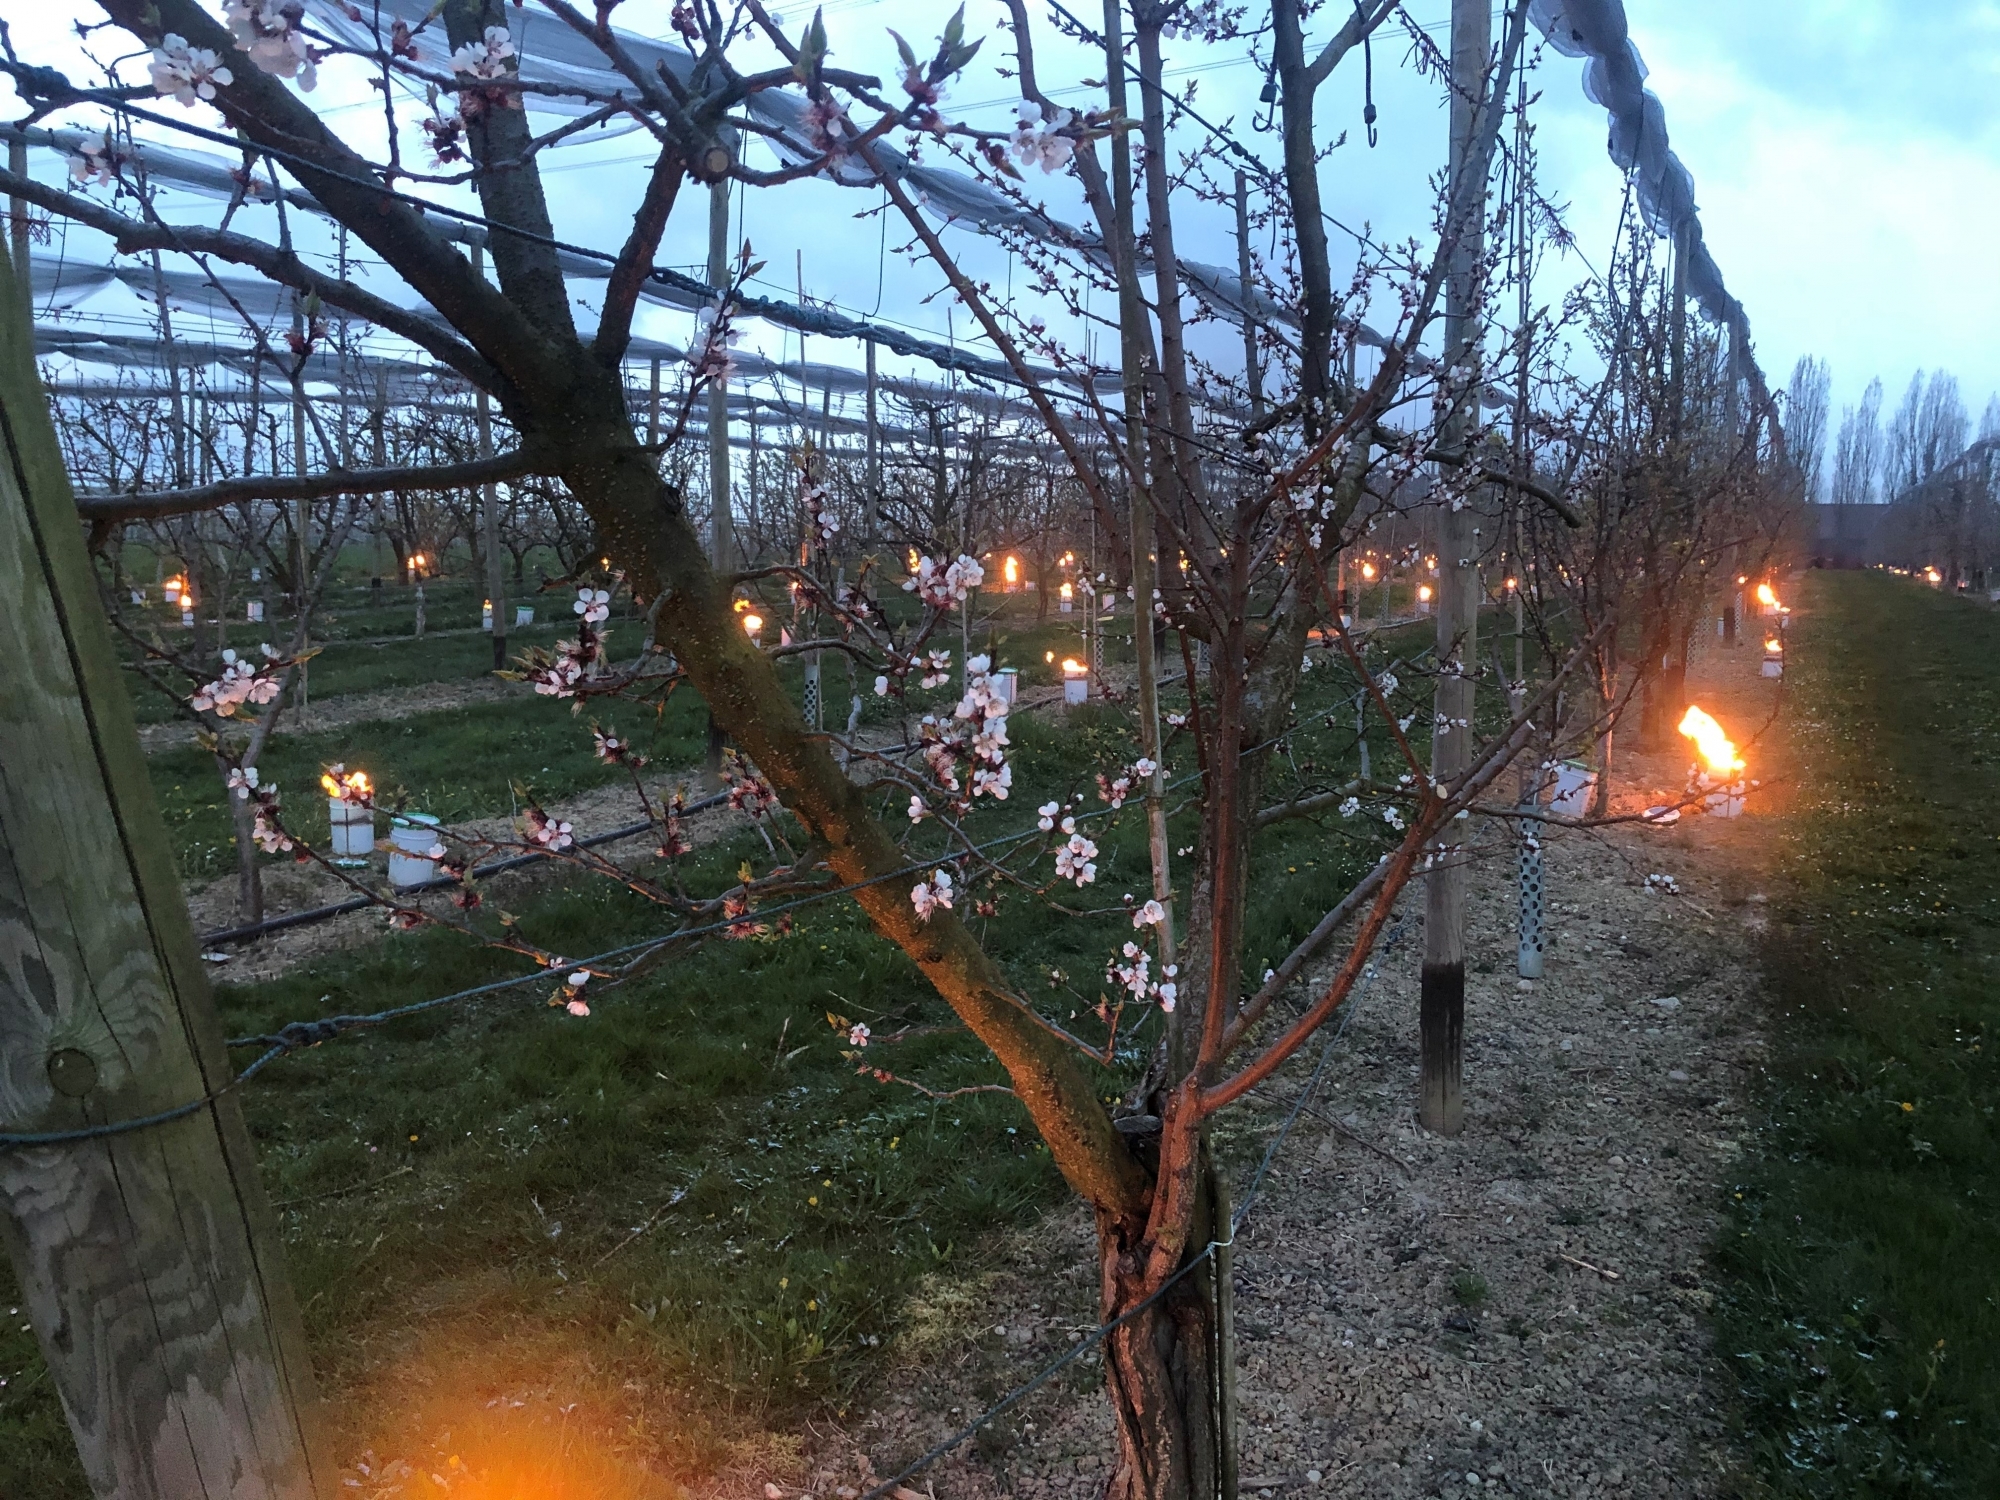 Des dizaines de grosses bougies ont brûlé dans les vergers du domaine de Trembley à Commugny la nuit dernière, afin d'atténuer les dangers liés au gel sur des fruits à l'état embryonnaire.